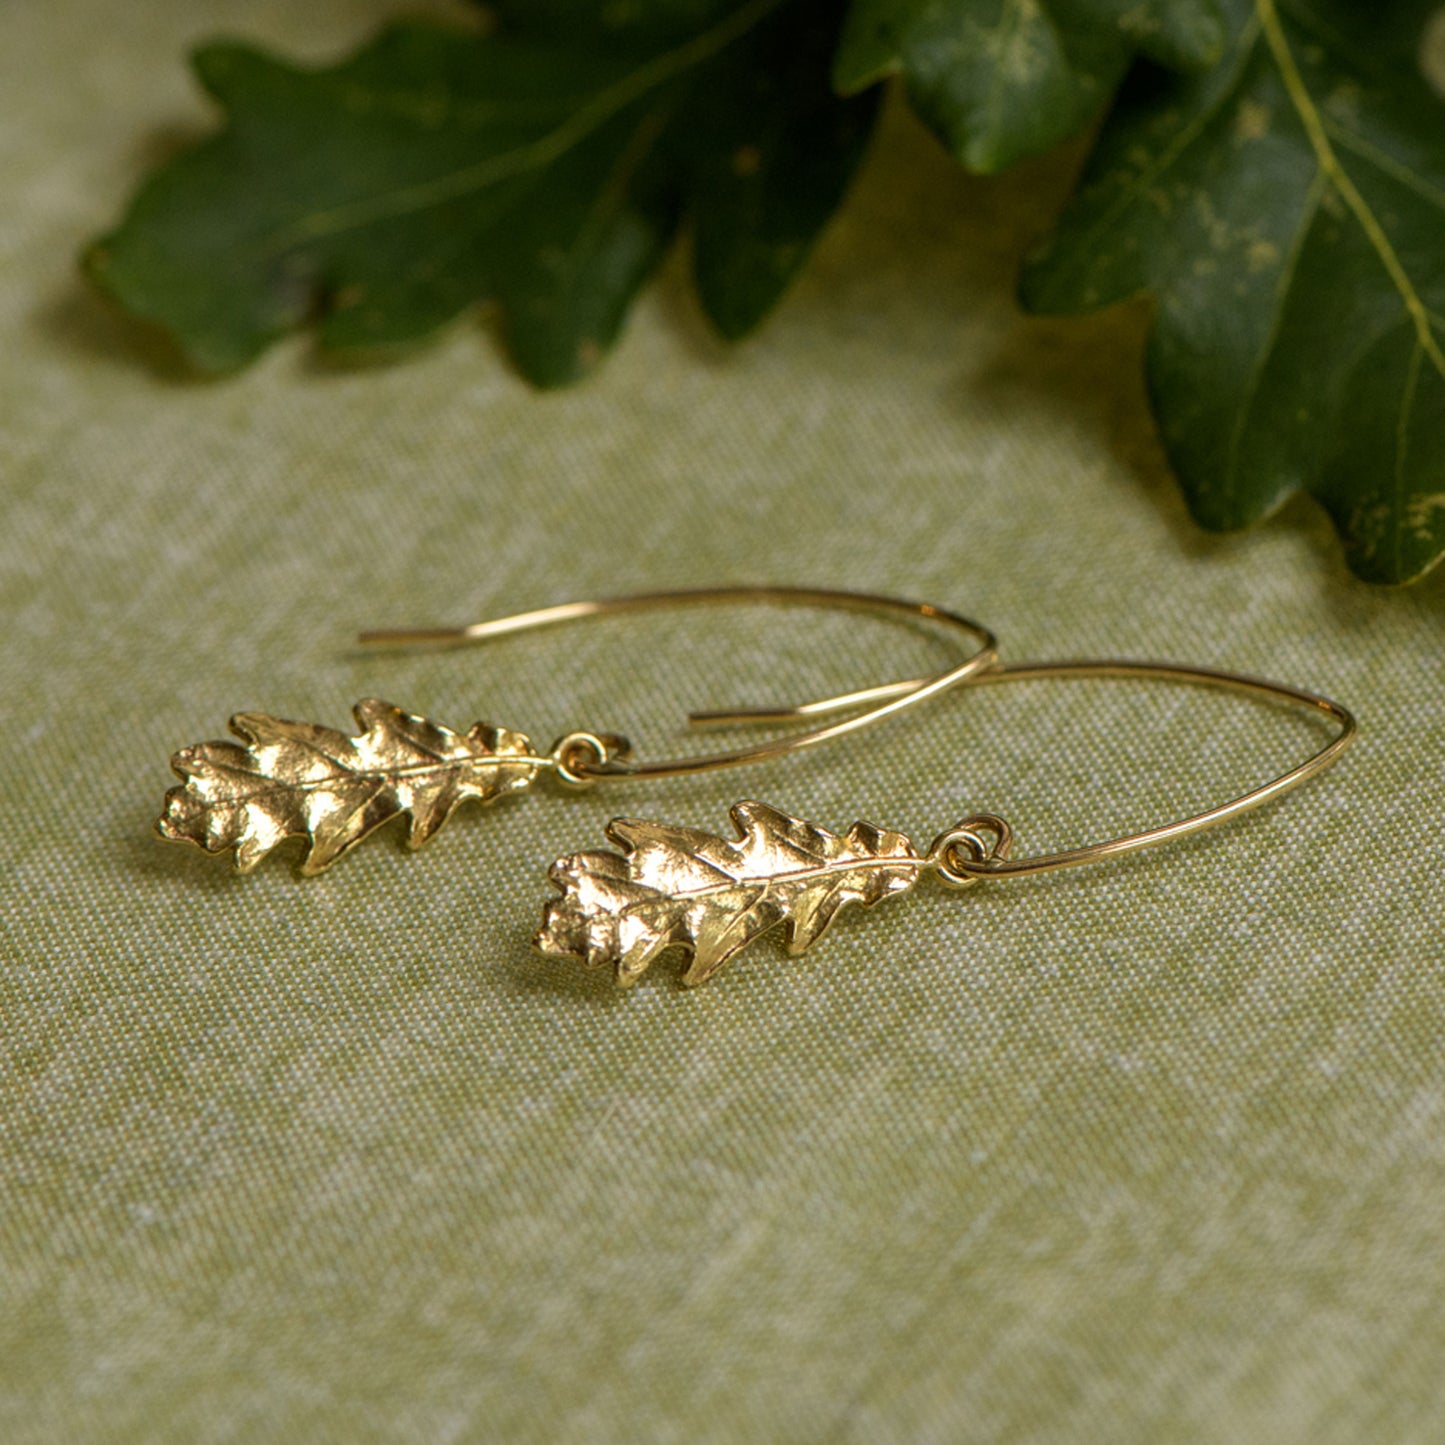 9ct gold oak leaf dainty drop earrings by Notion Jewellery